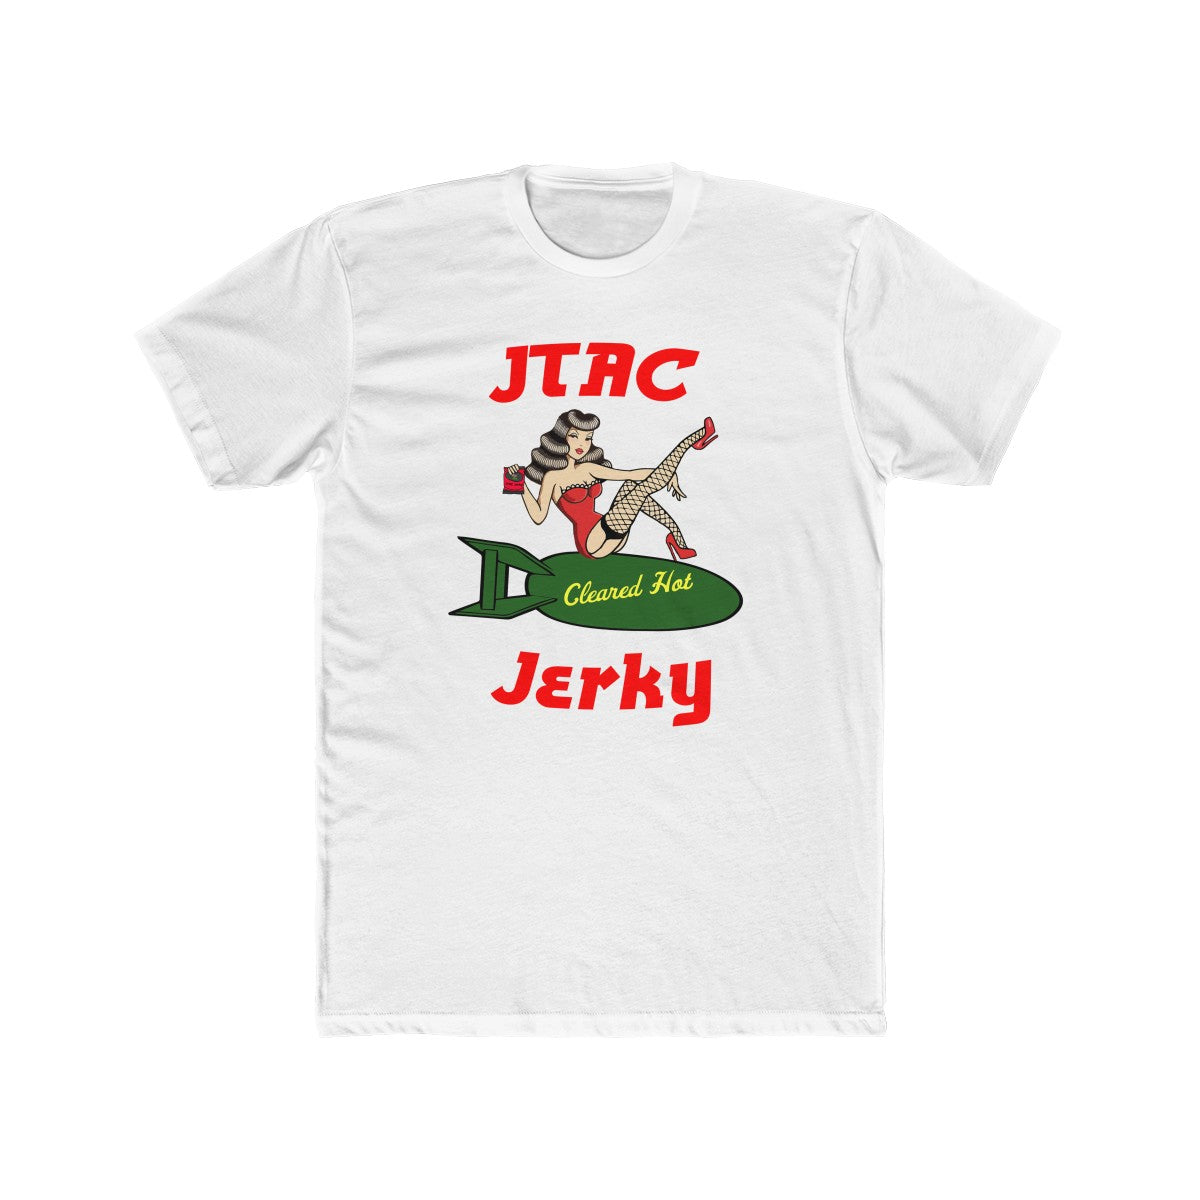 JTAC Jerky Tee